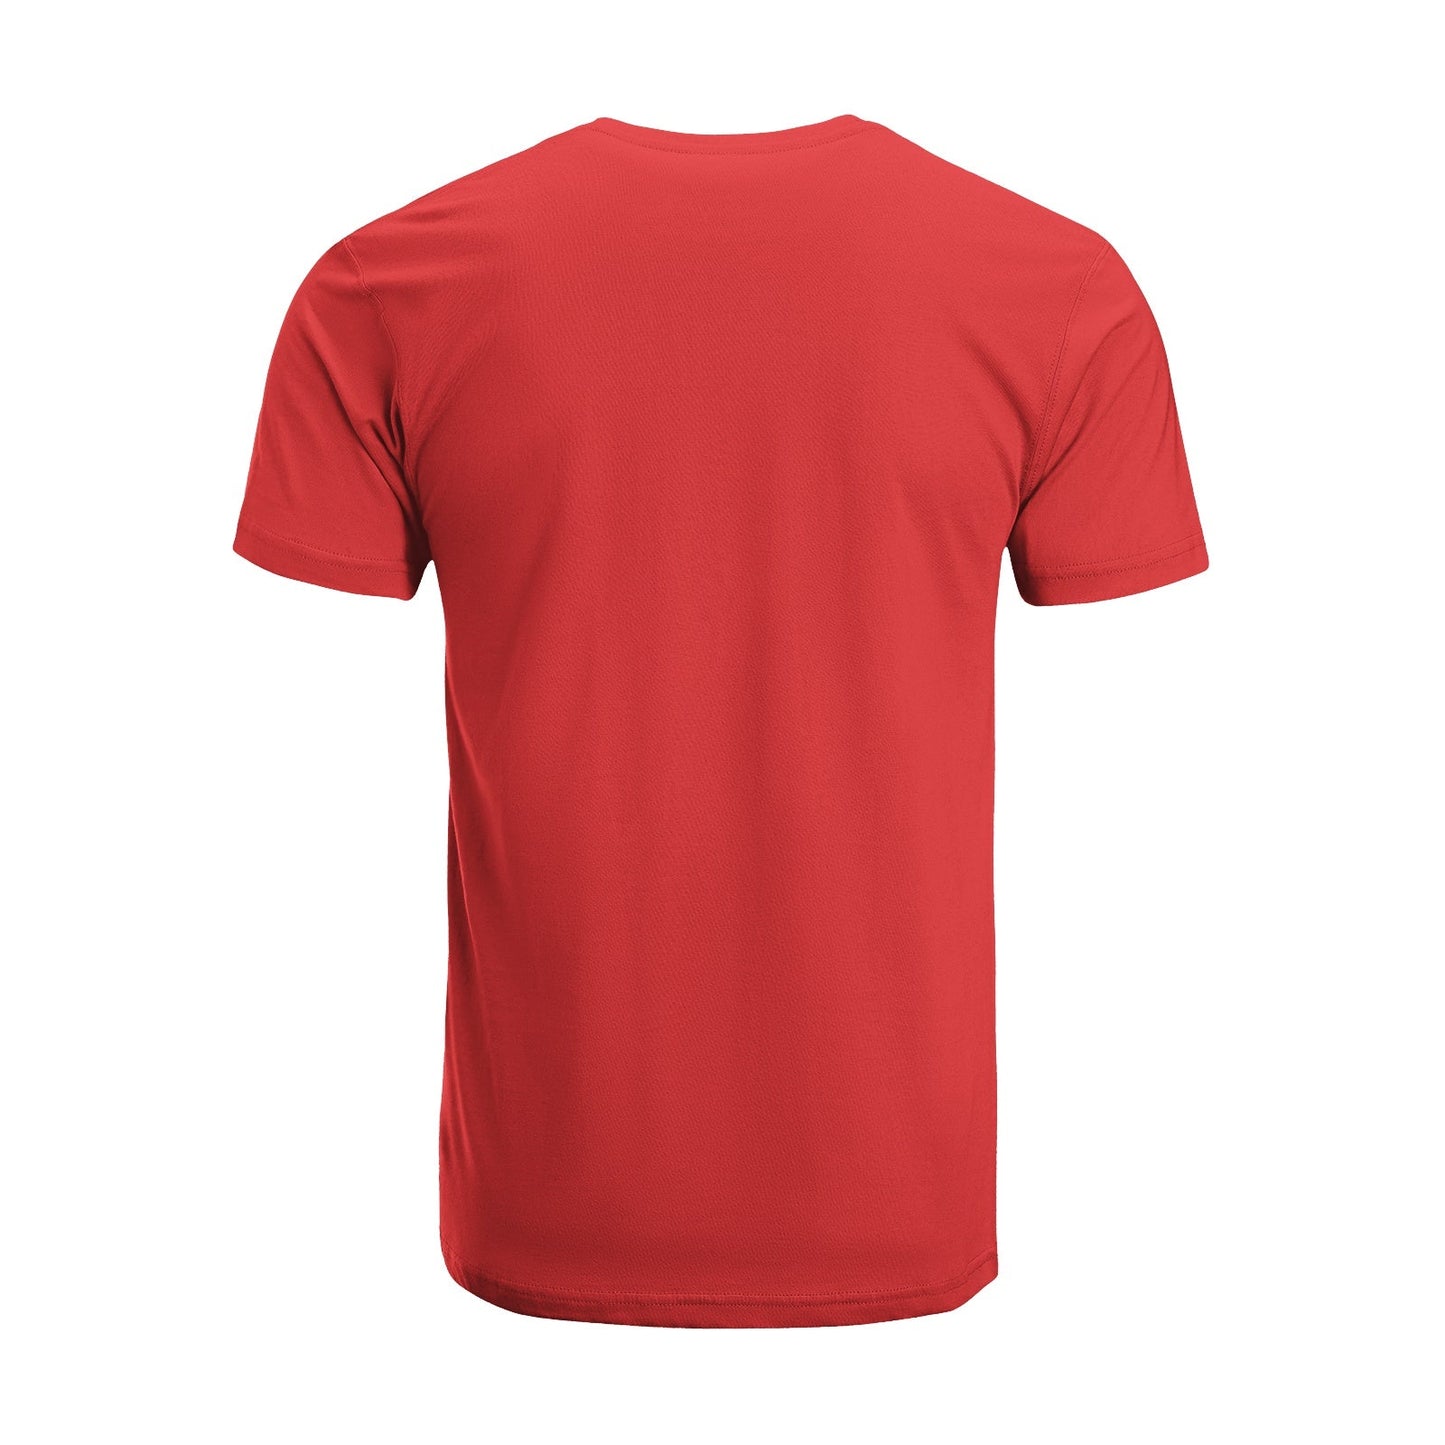 Unisex Short Sleeve Crew Neck Cotton Jersey T-Shirt TRUCK 39